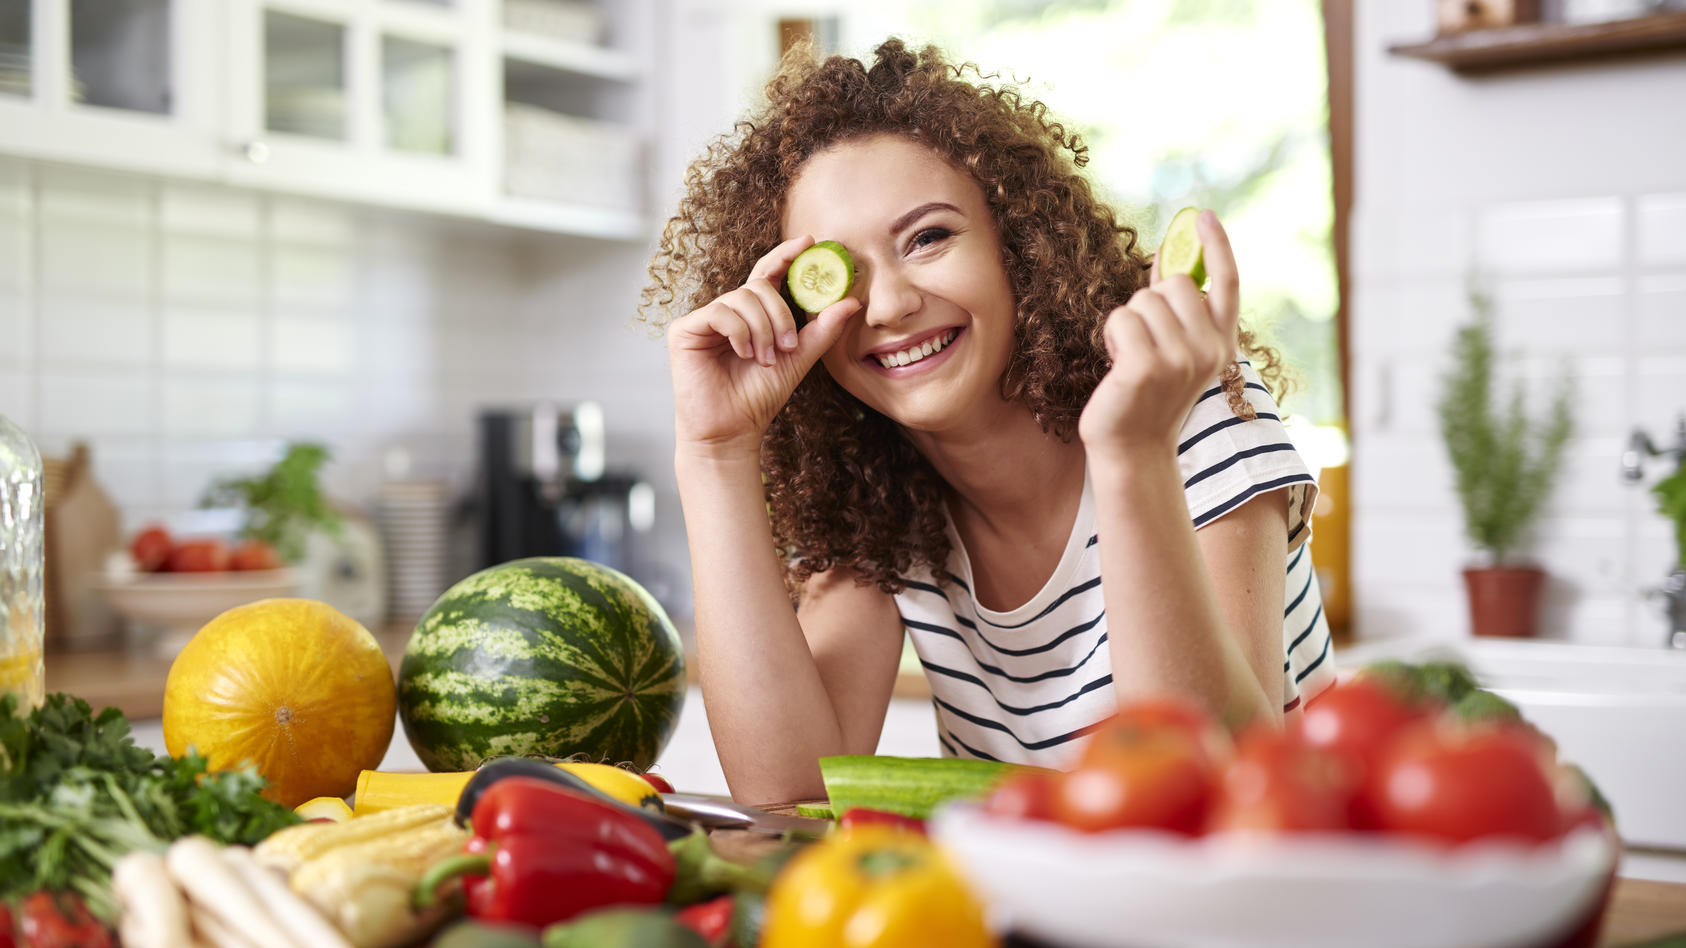 Obst und Gemüse liefern viele Vitamine und sekundäre Pflanzenstoffe, die den Stoffwechsel in Schwung bringen. 